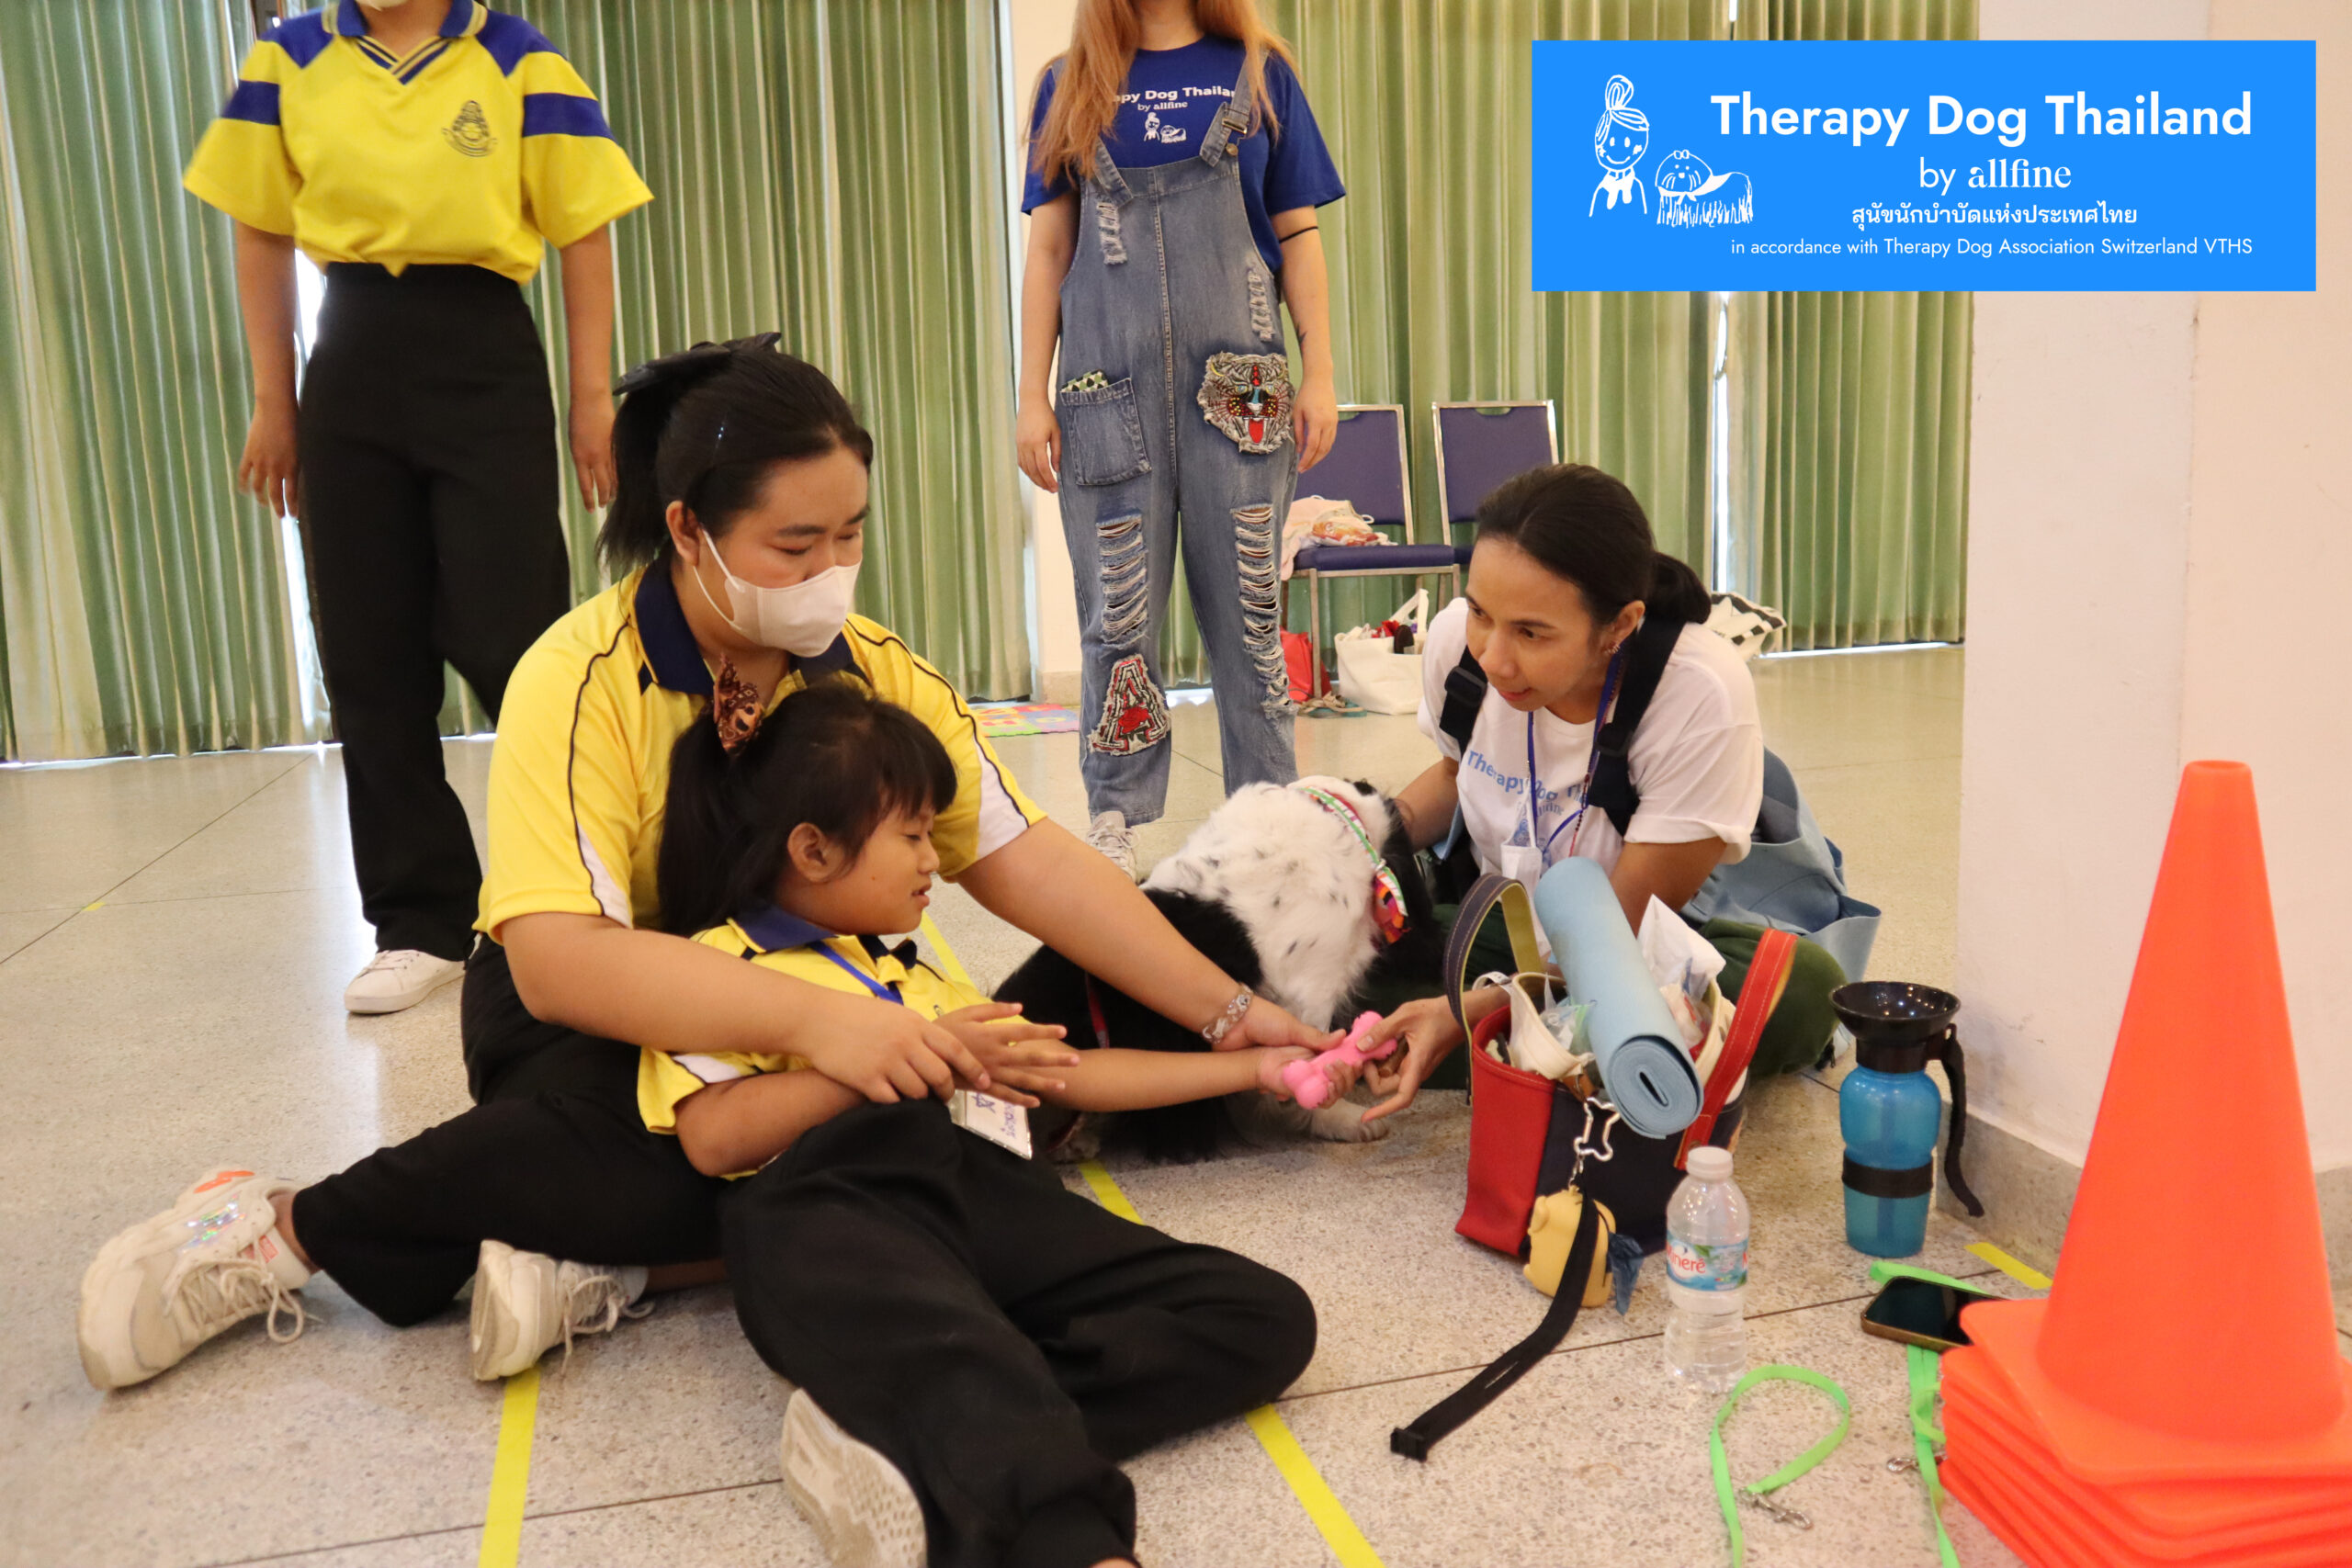 กิจกรรมบำบัดเด็กพิเศษ, therapy dog thailand, เล่นกับเด็ก